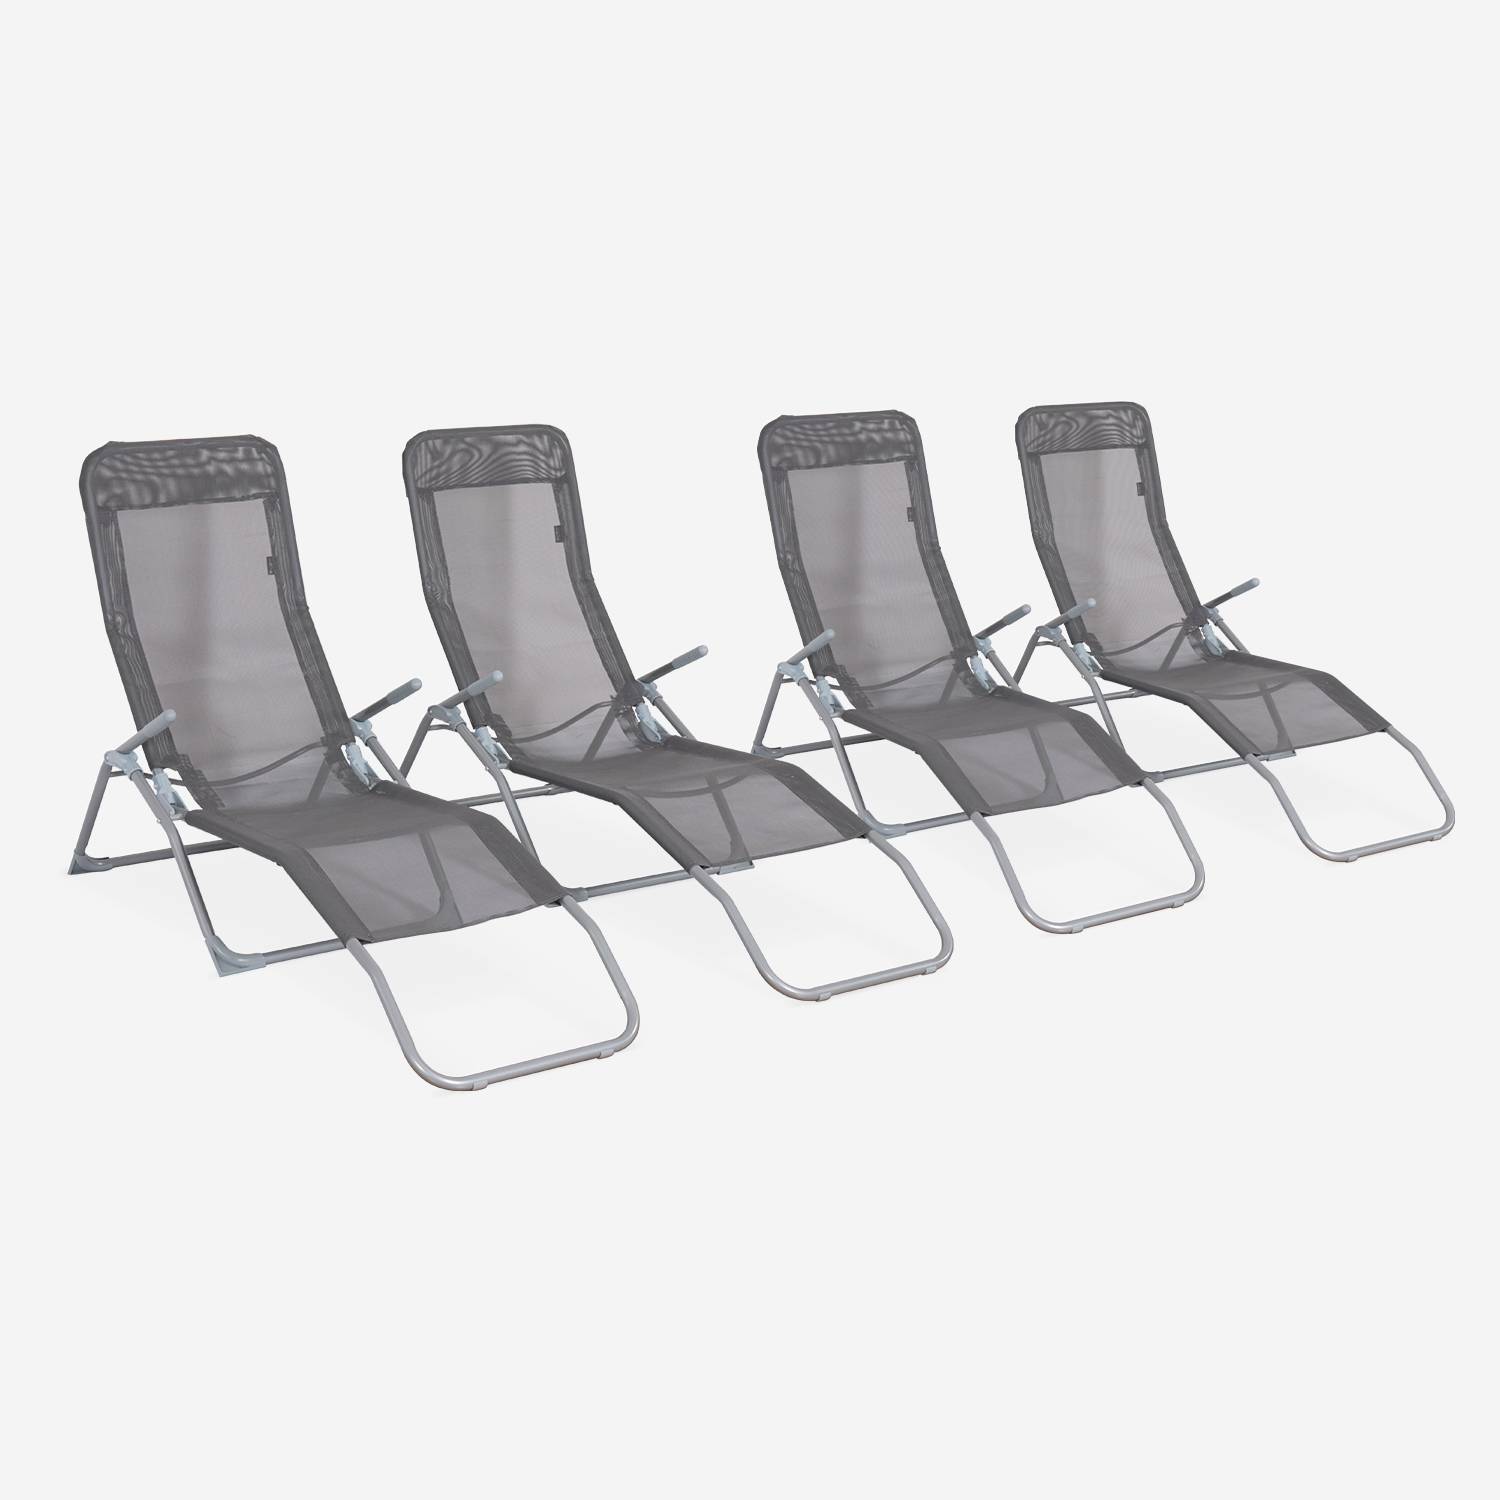 Set mit 4 zusammenklappbaren Sonnenliegen - Levito dunkelgrau - Textilene Liegestühle mit 2 Positionen, Liegestühle Photo1